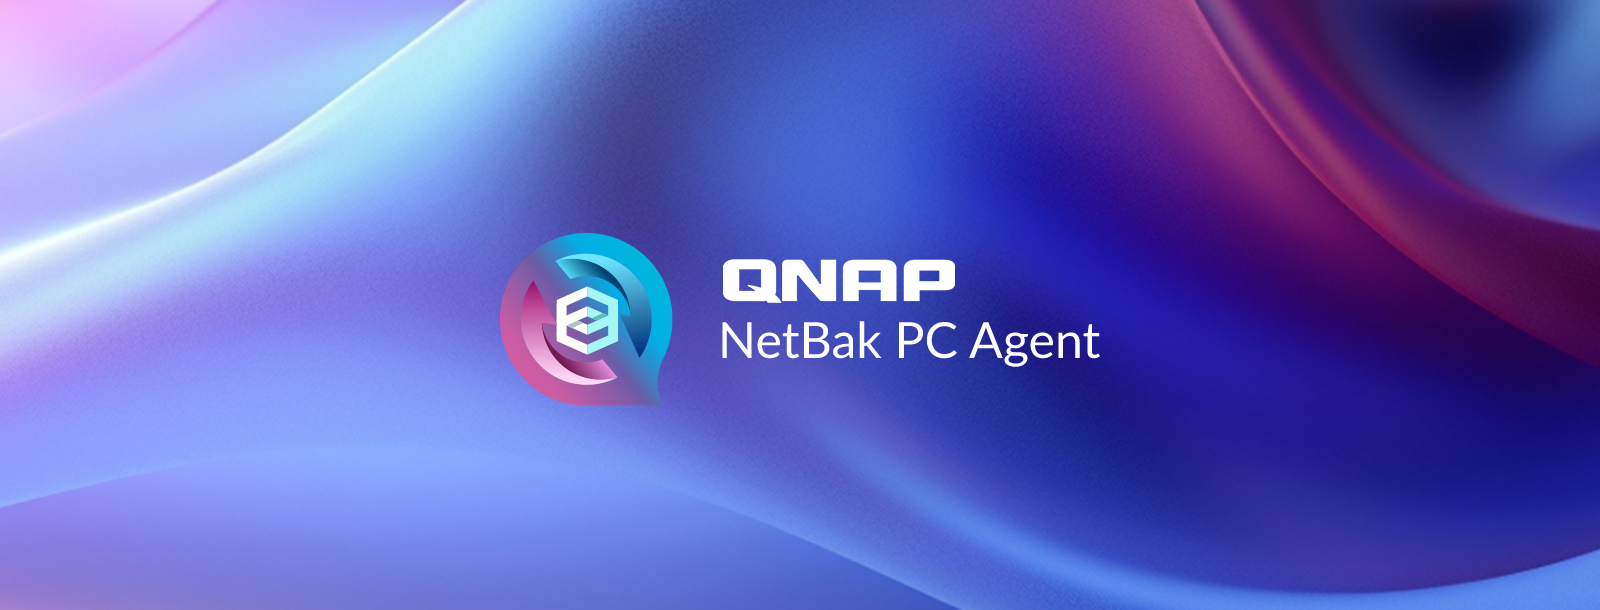 NetBak PC – darmowa aplikacja QNAP do tworzenia kopii systemów Windows